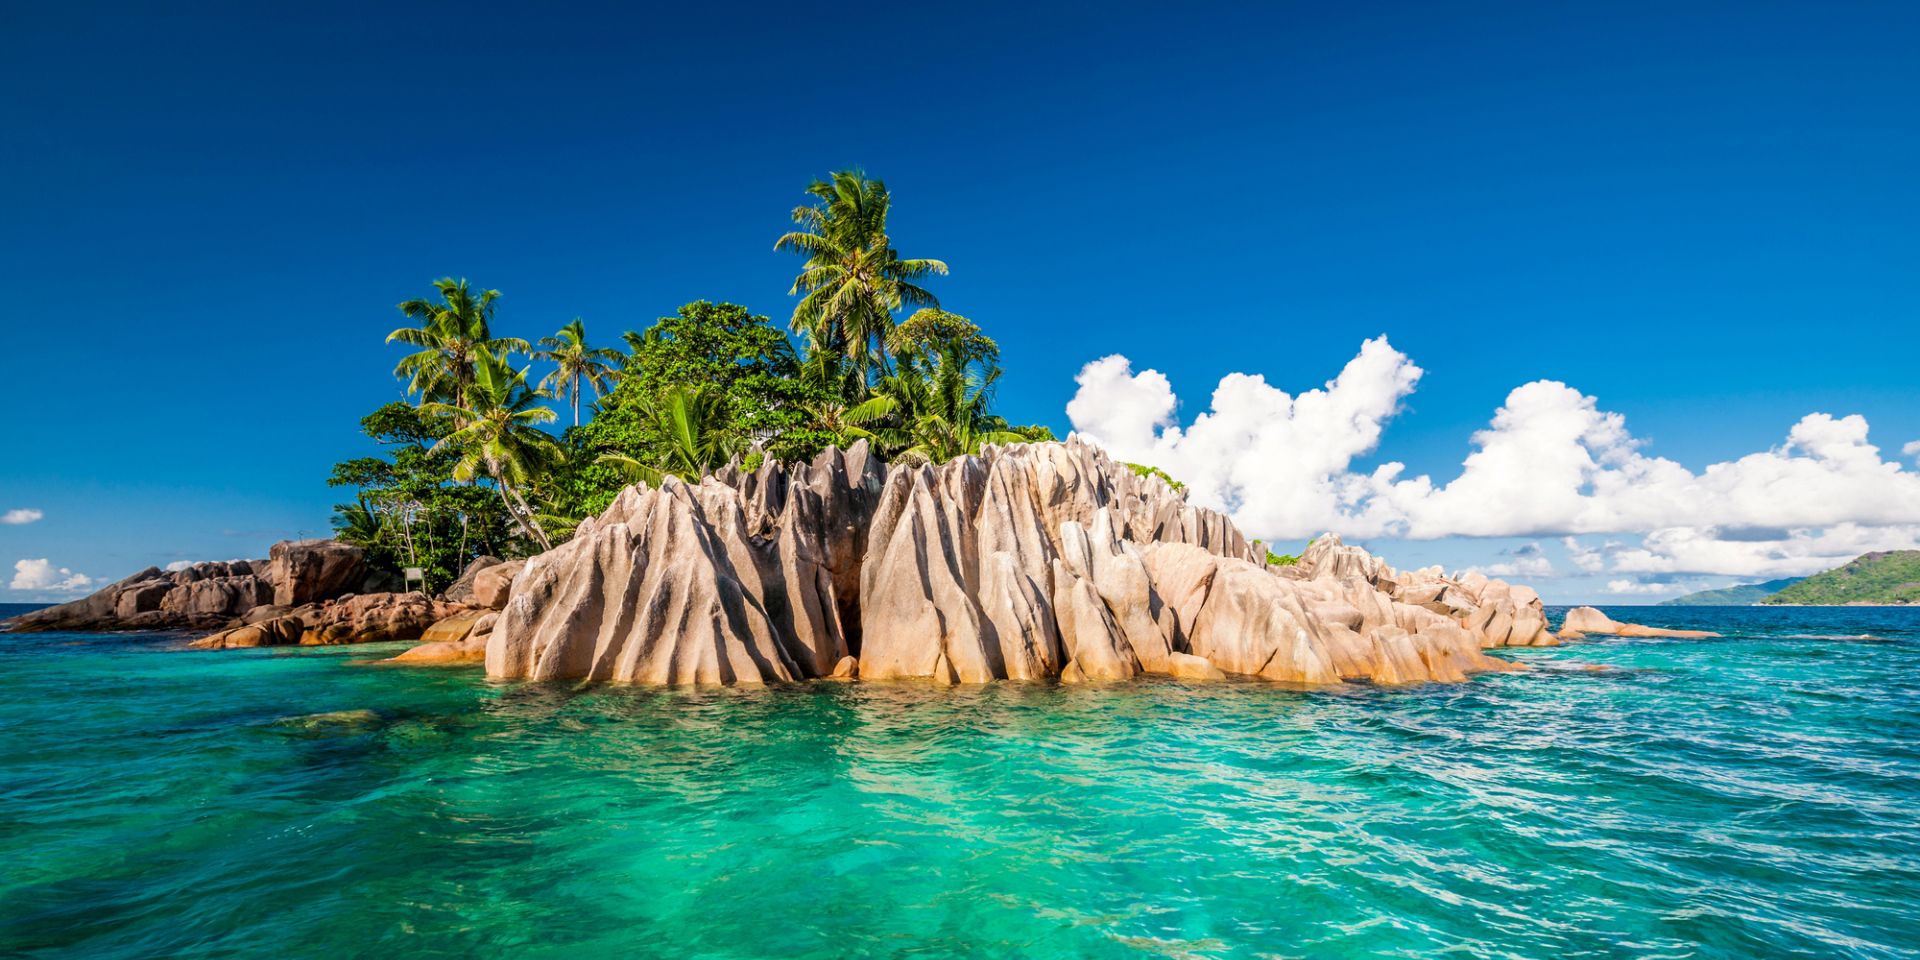 Crociera per subacquei alle Seychelles in veliero (Da nov – apr)